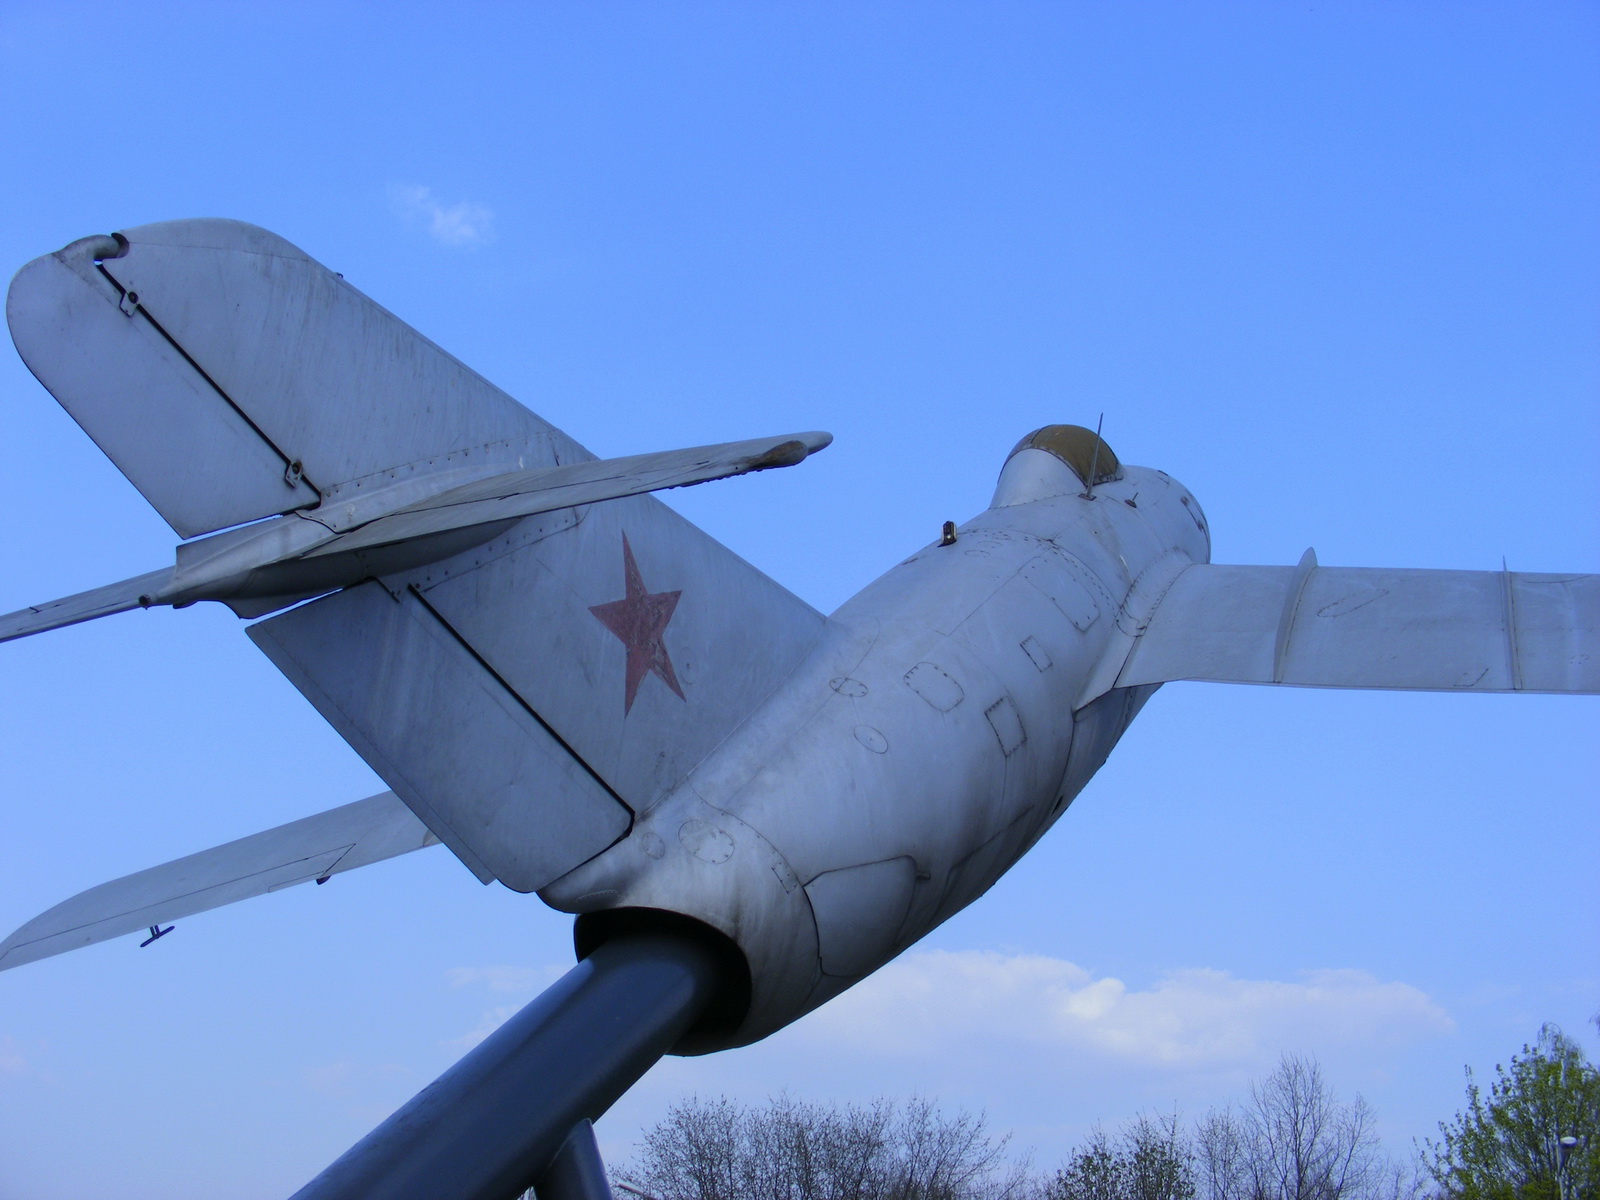 Памятник летчикам, парк Победы